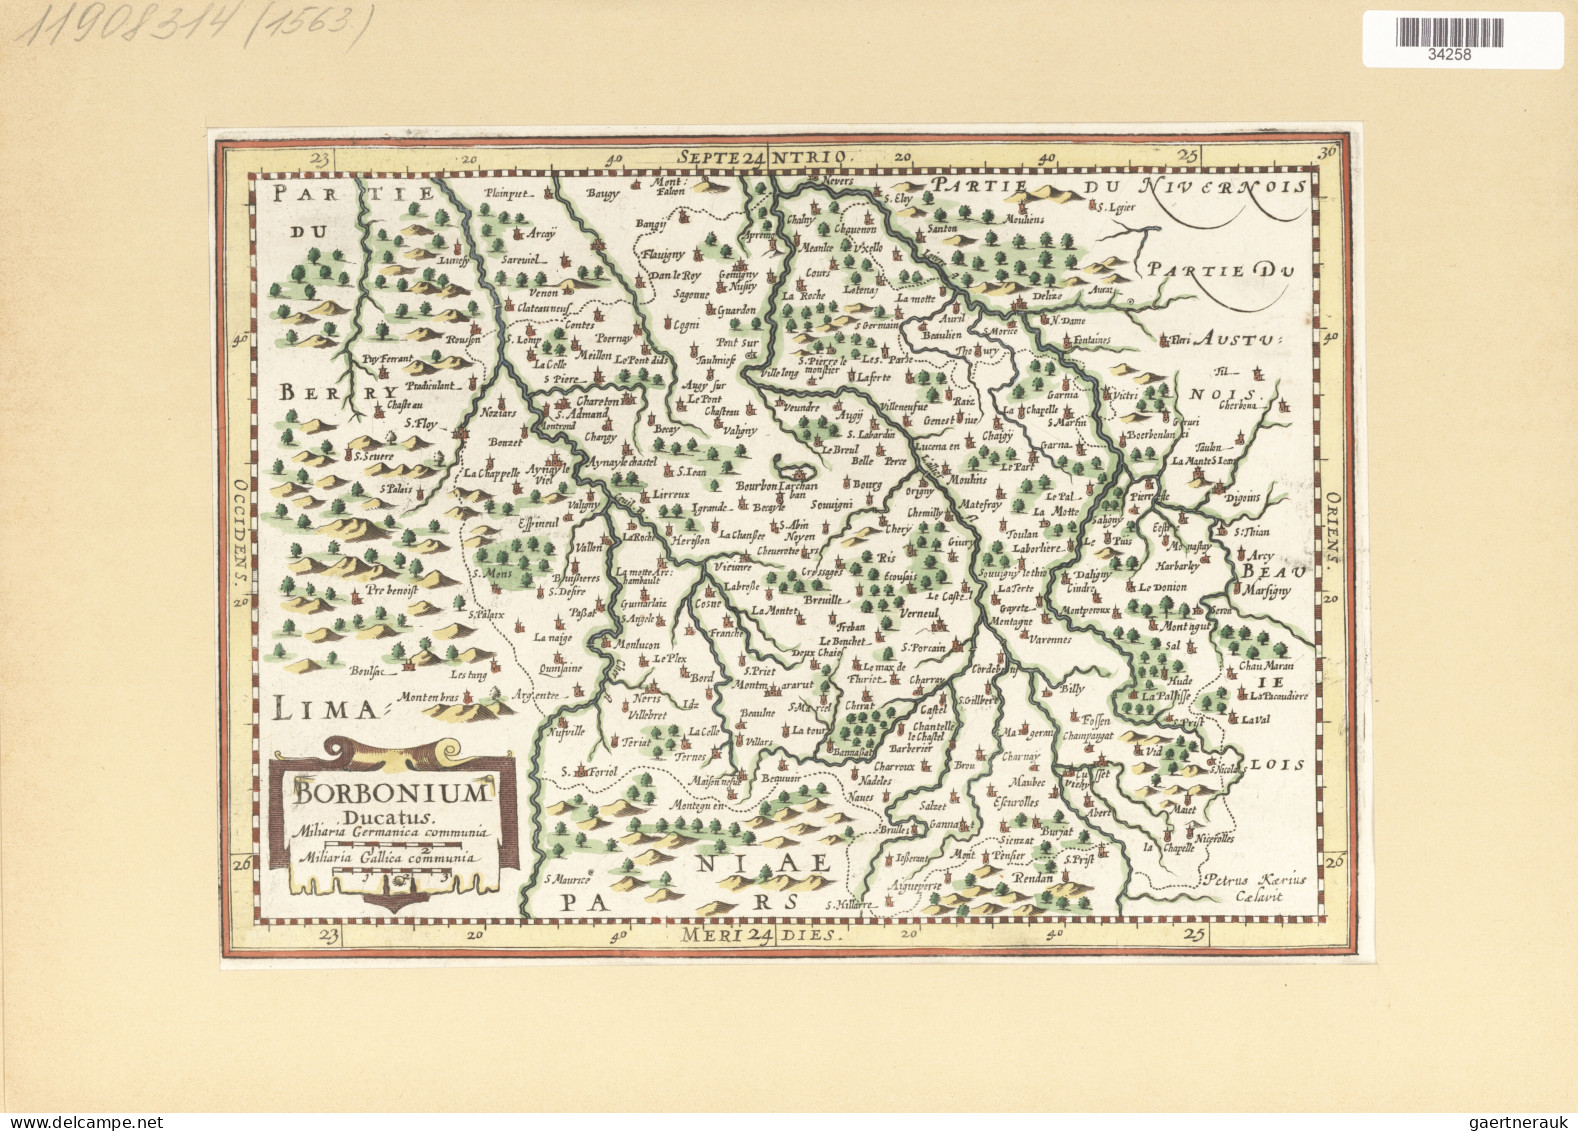 Landkarten und Stiche: 1580/1820 (ca). Bestand von über 130 alten Landkarten, me